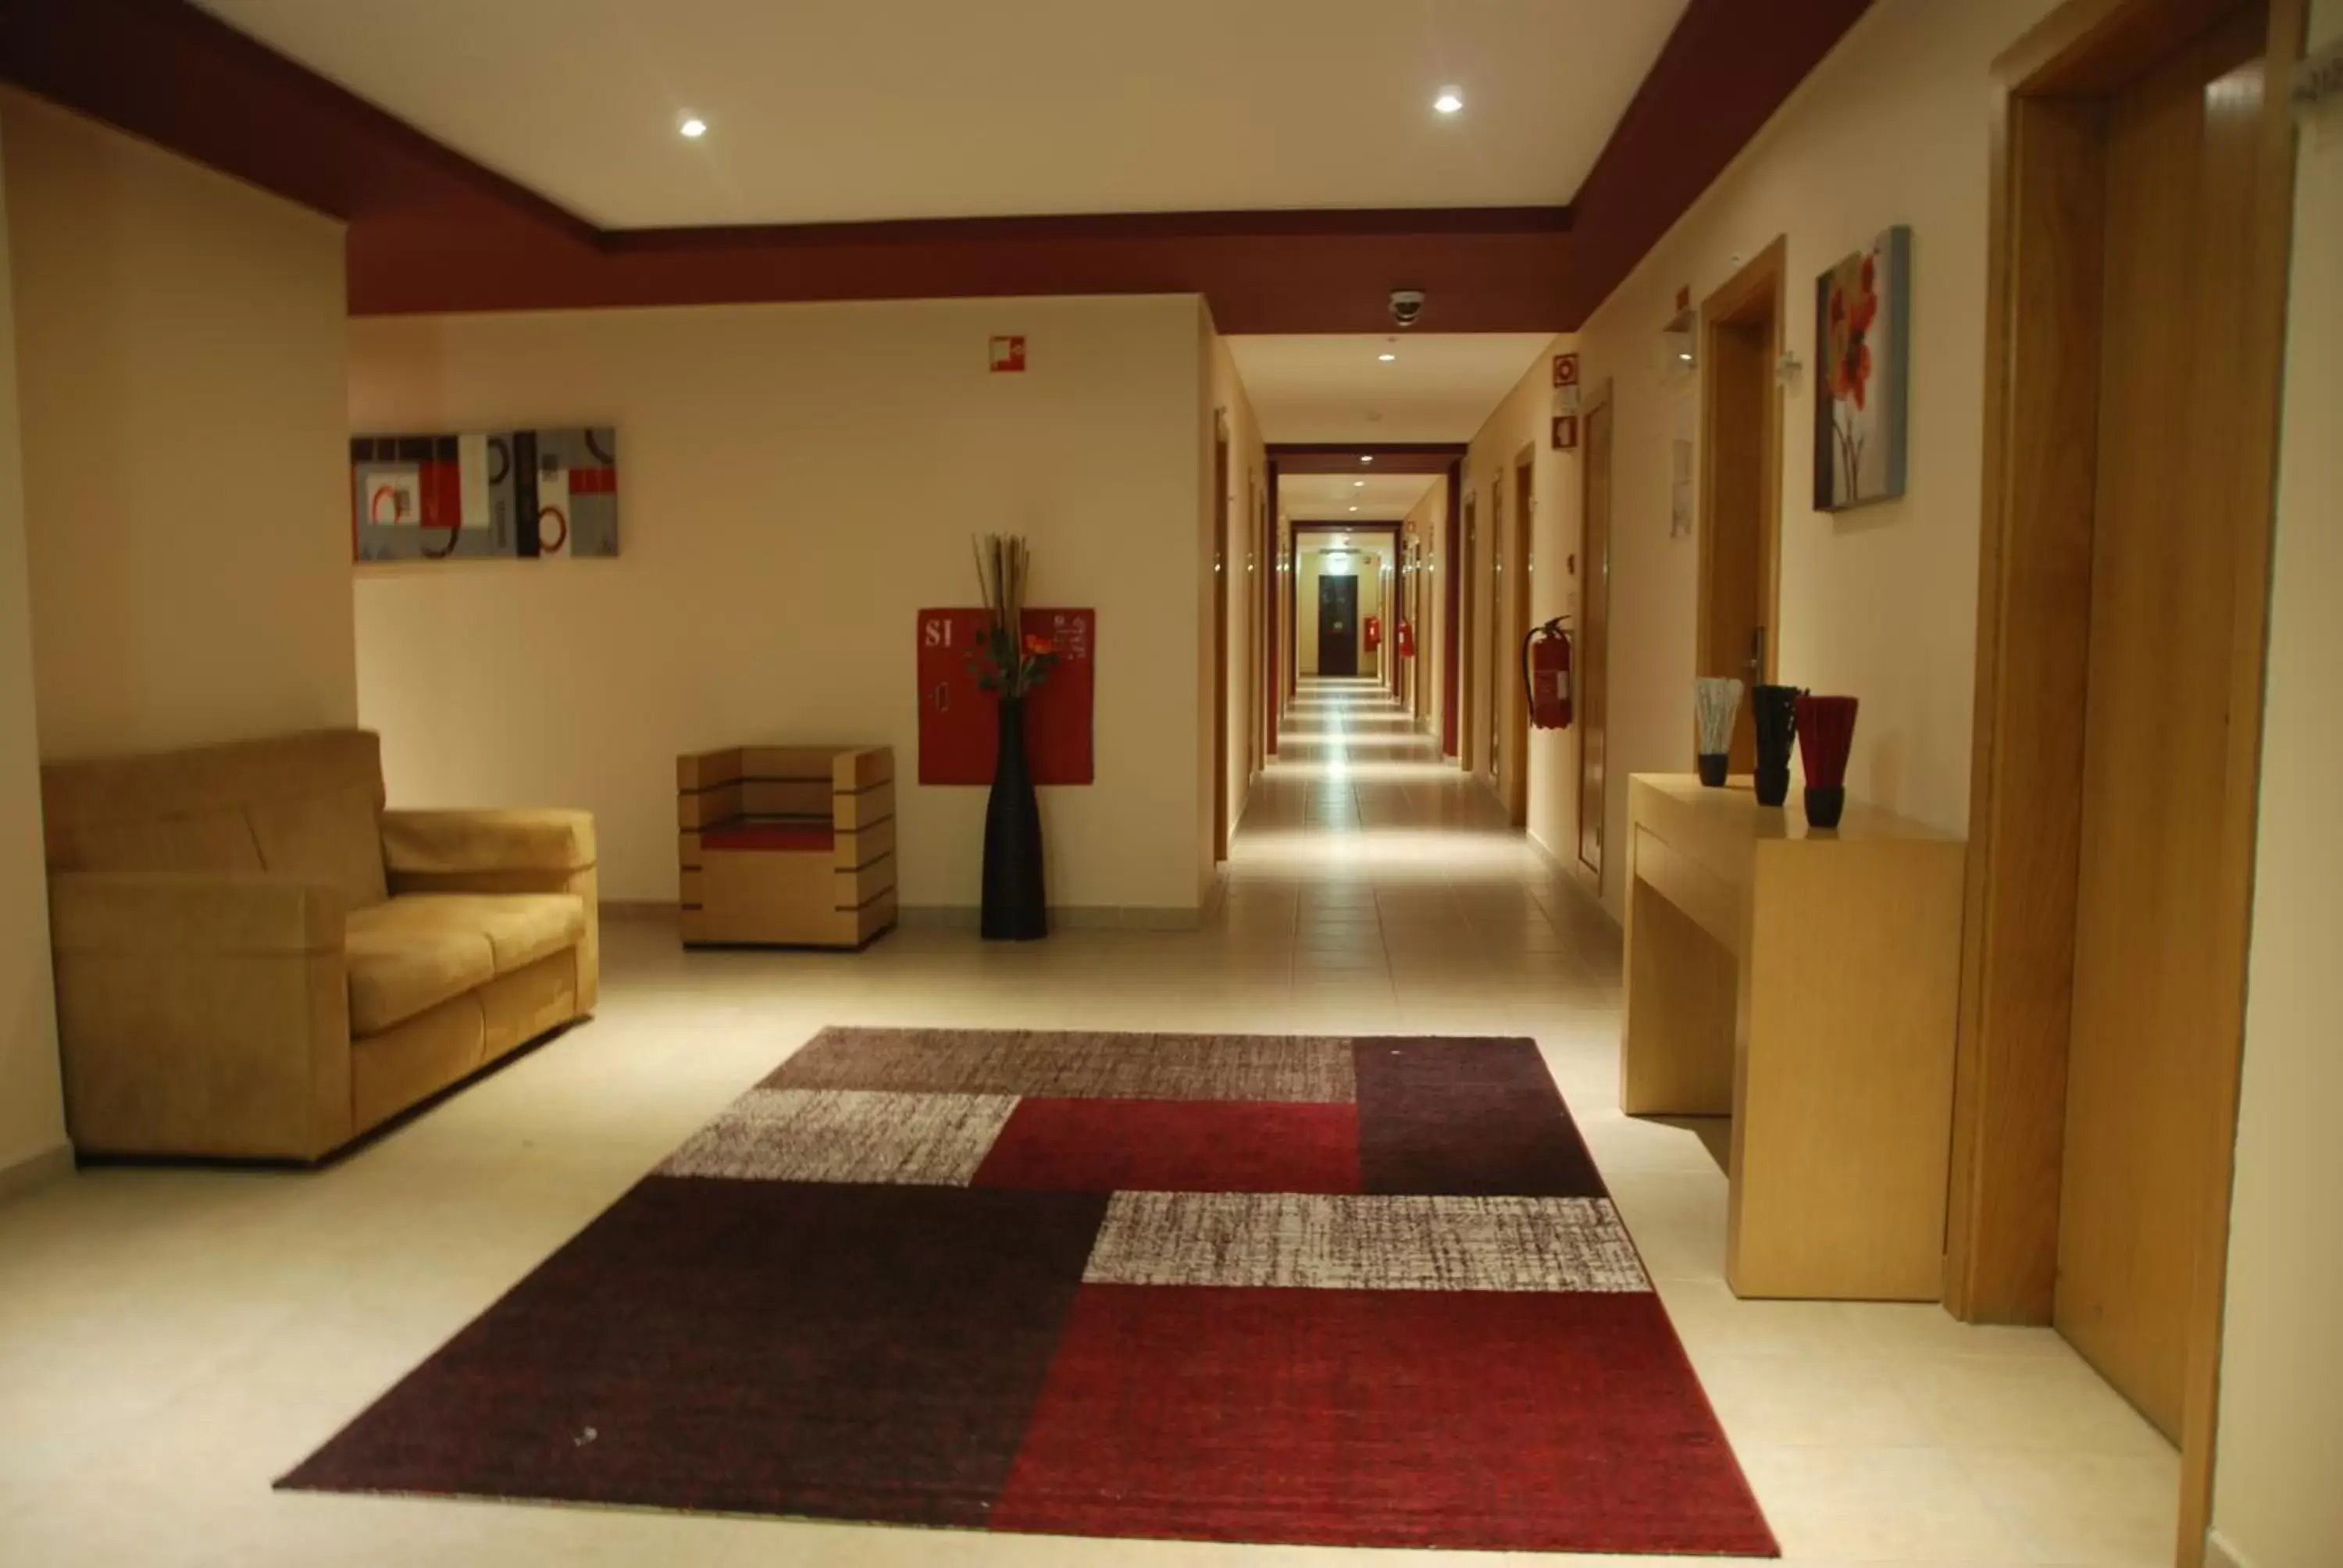 Lobby or reception, Lobby/Reception in Hotel Alba